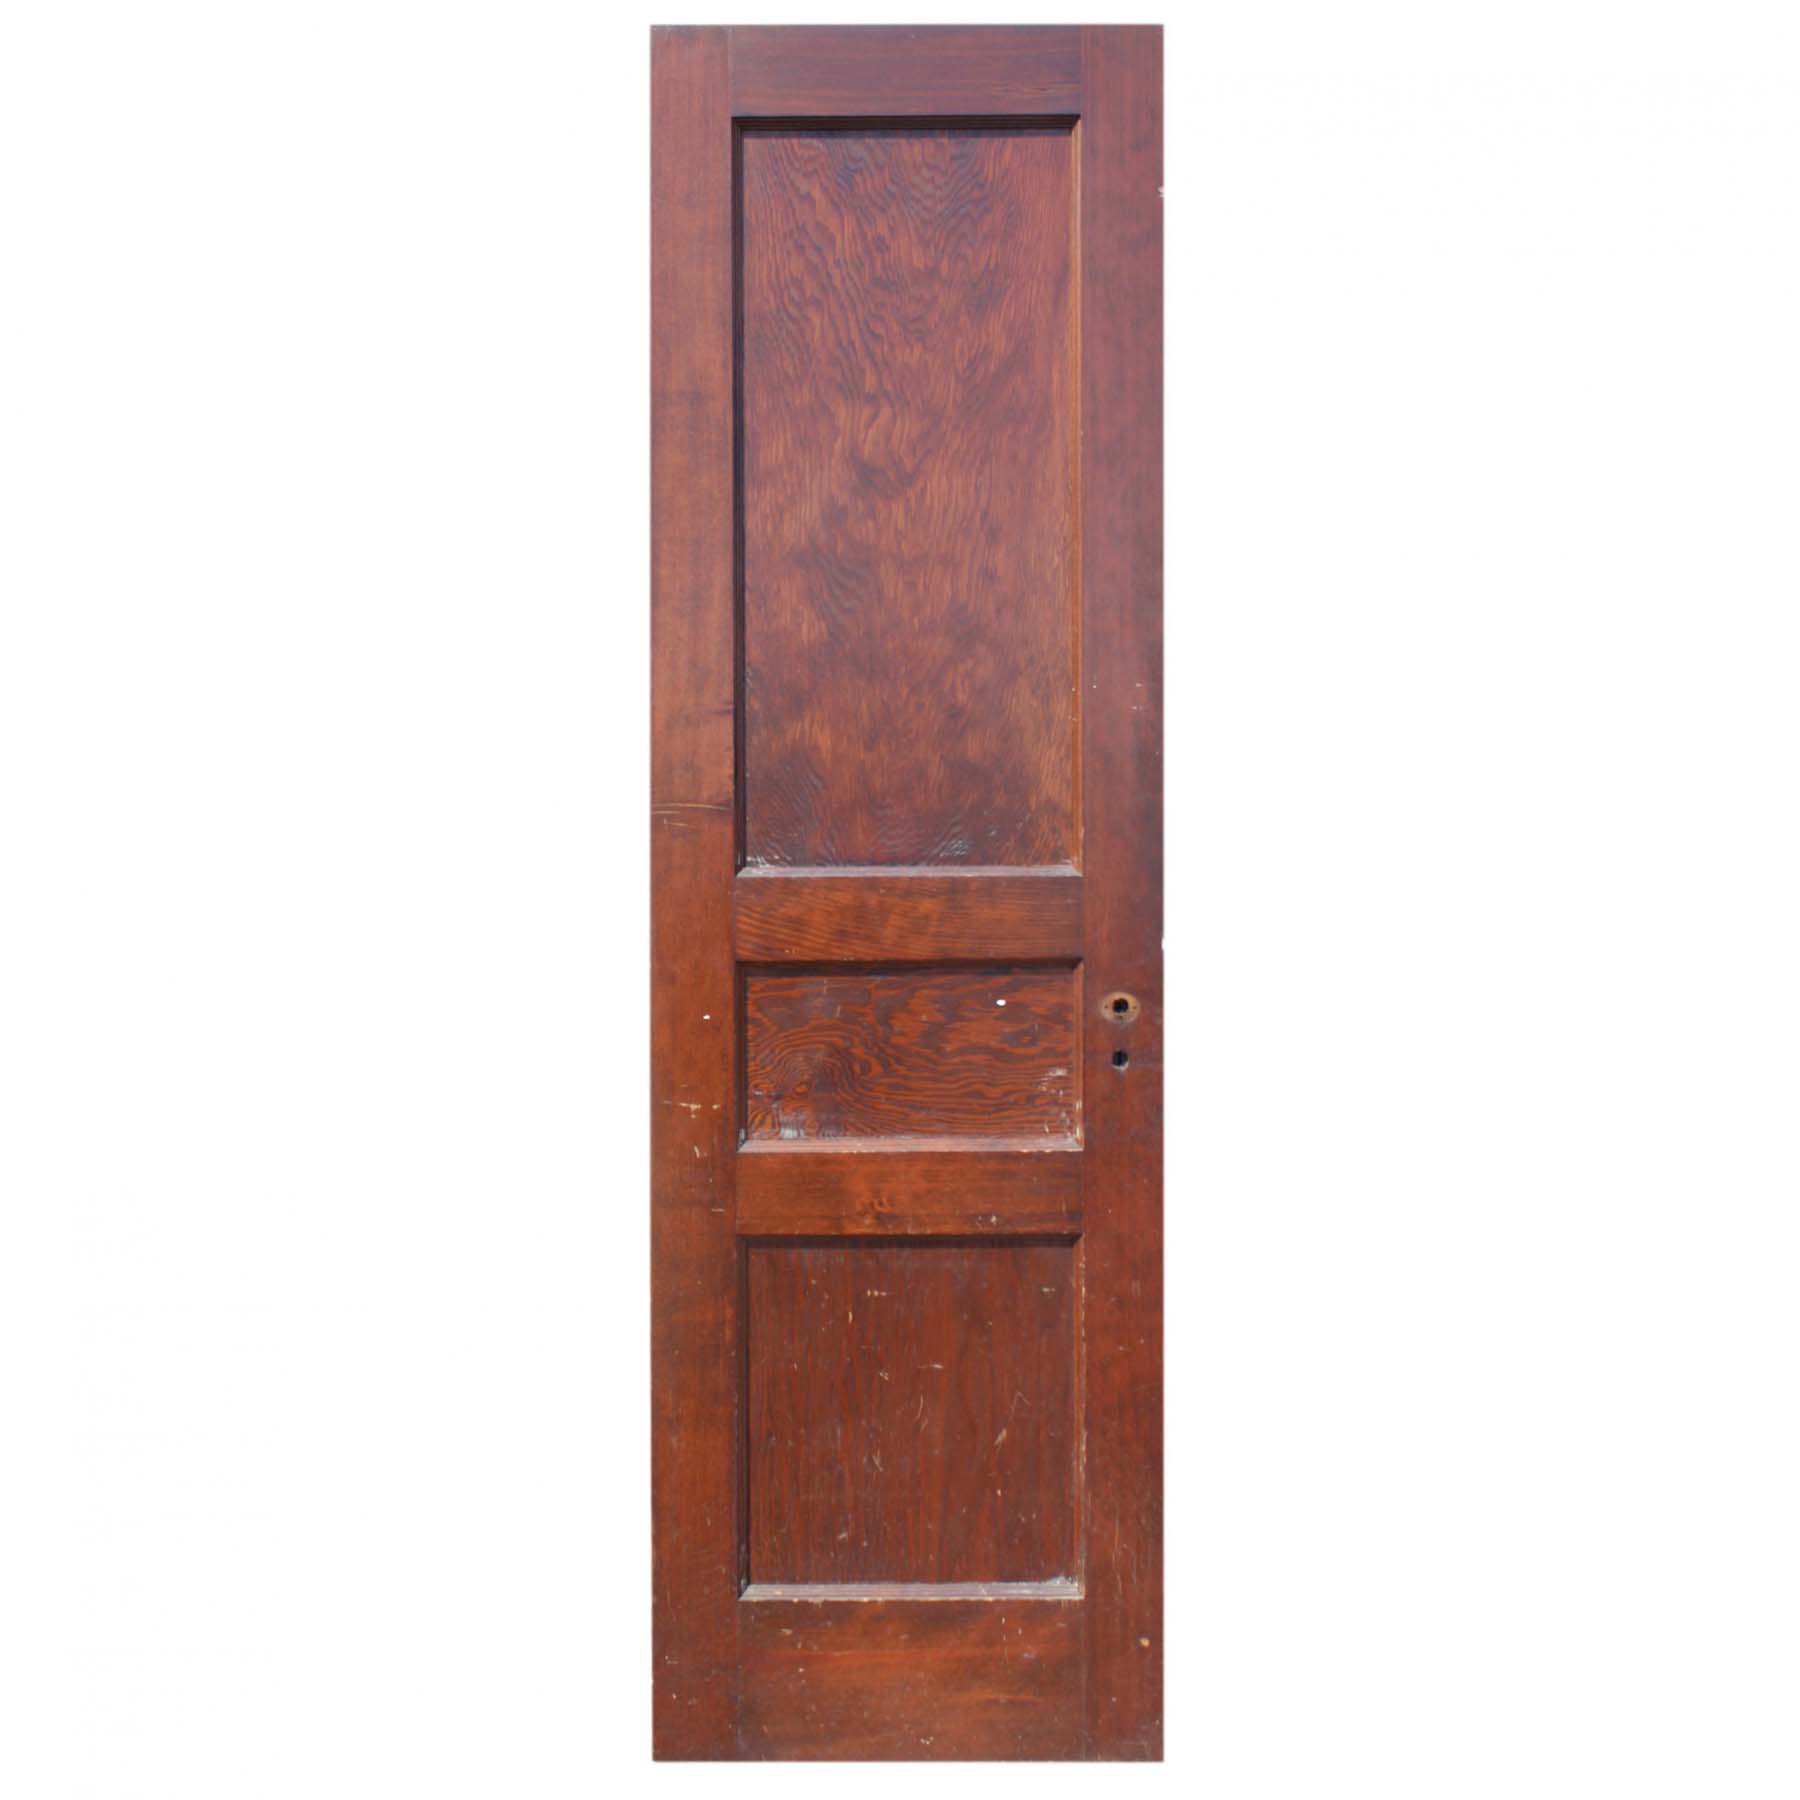 SOLD Reclaimed 24” Three-Panel Solid Wood Door-0